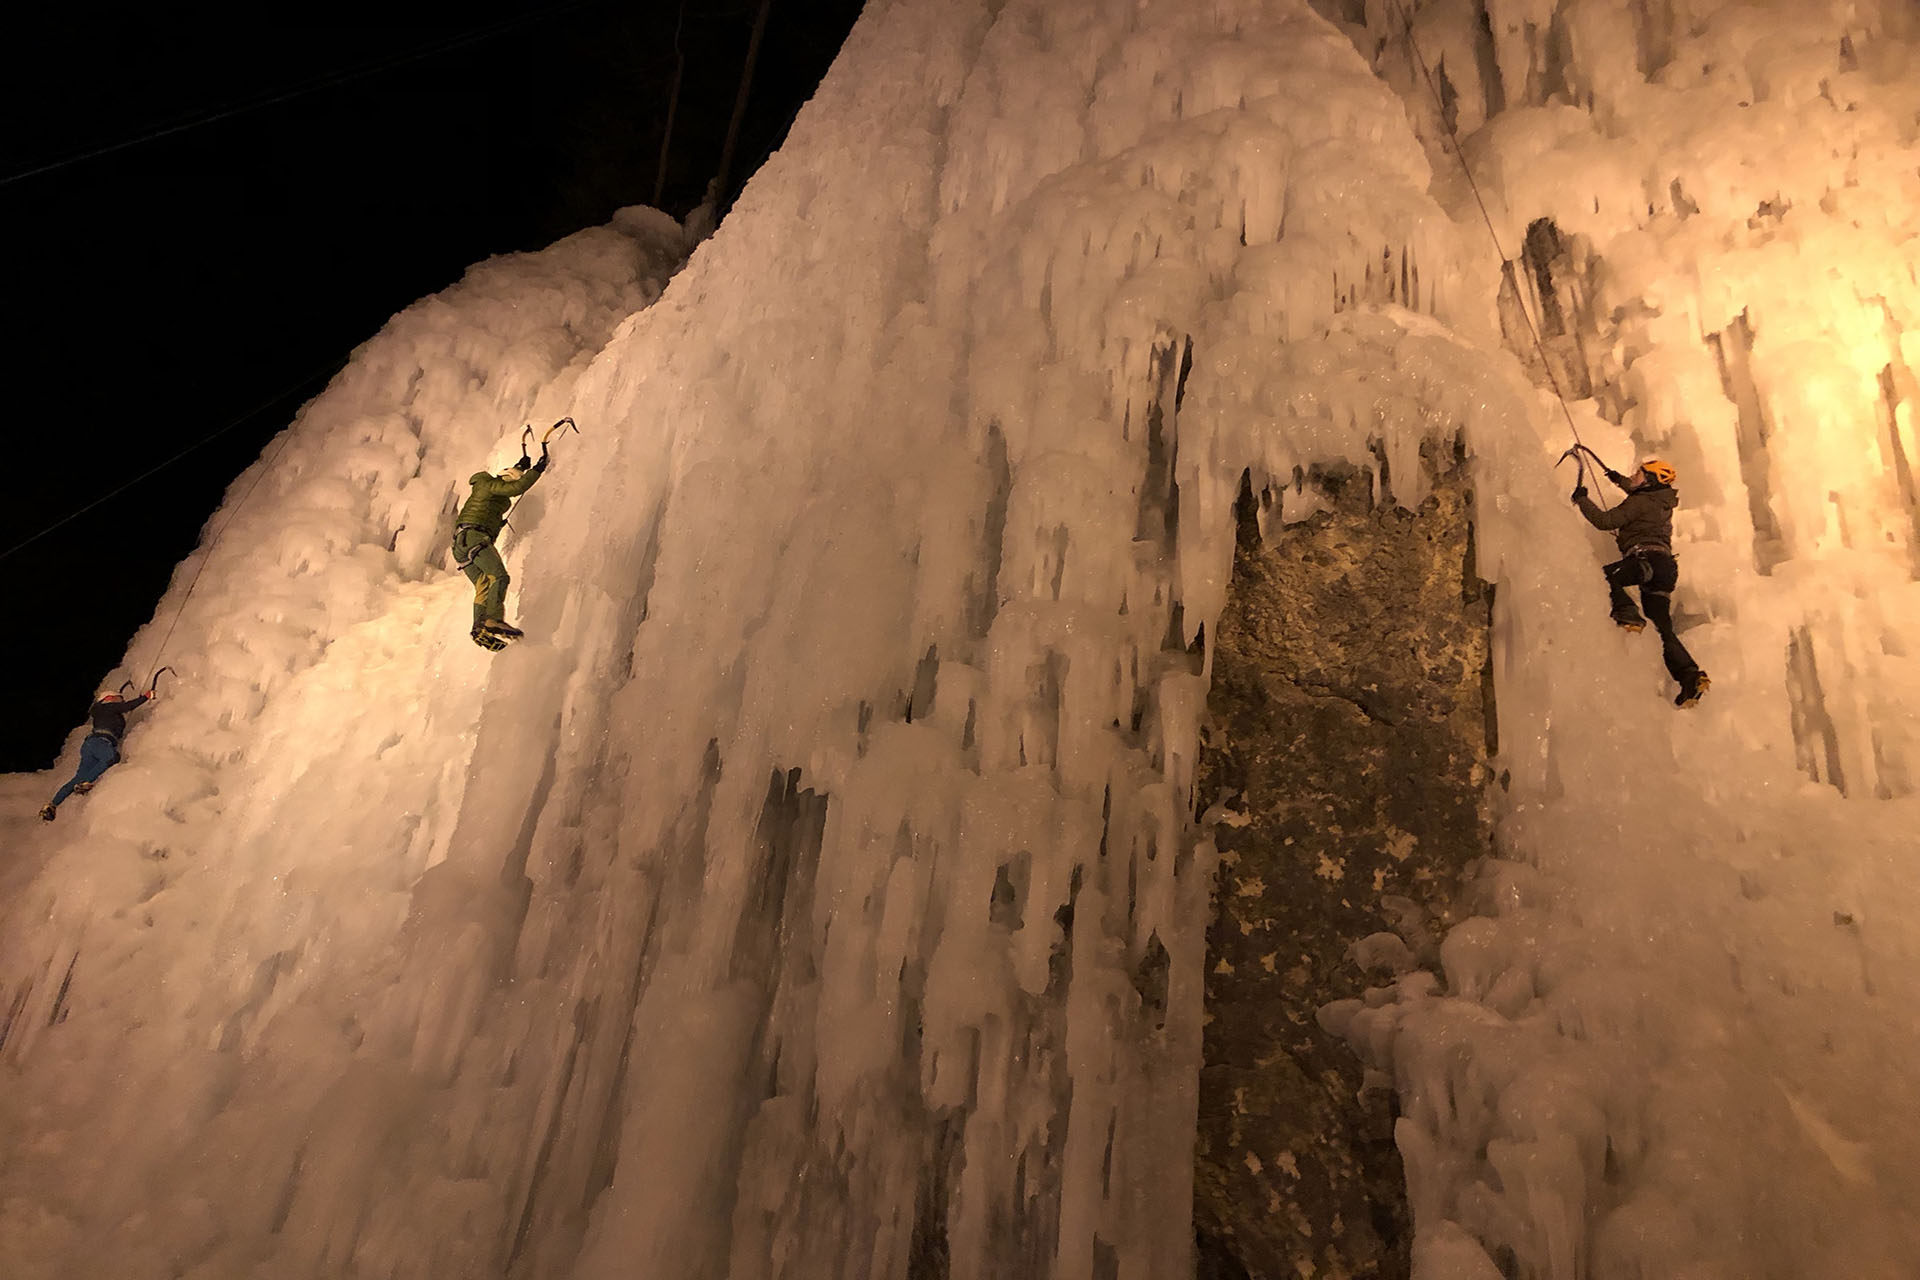 Nočno vodeno ledno plezanje v lednem kraljestu soteske Mlačca v Mojstrani